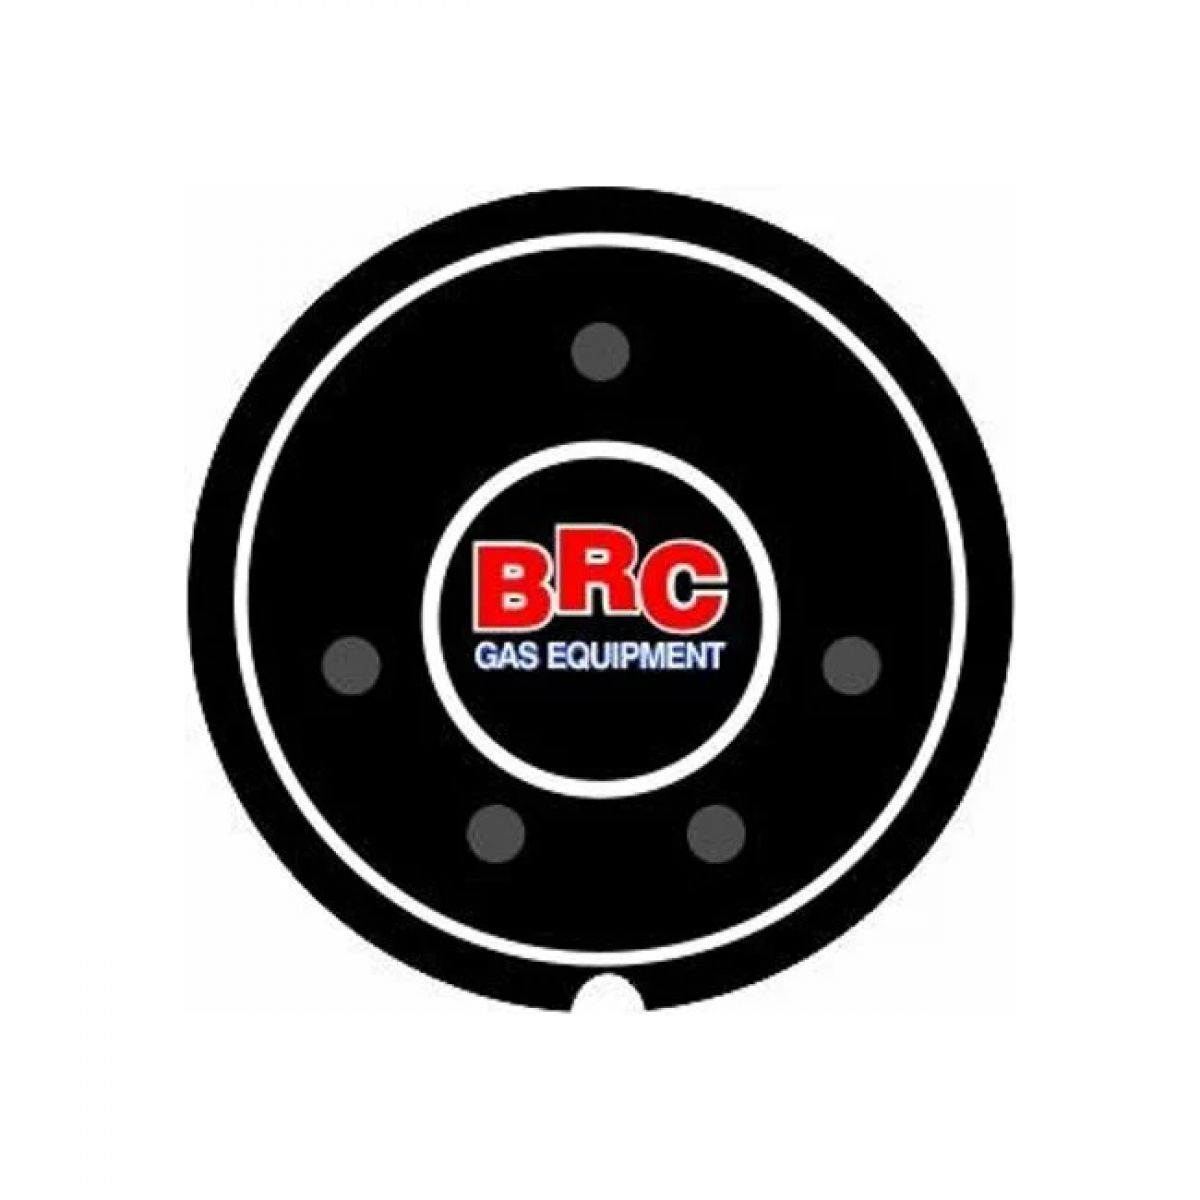 BRC Sıralı Sistem Lpg Düğme Etiketi